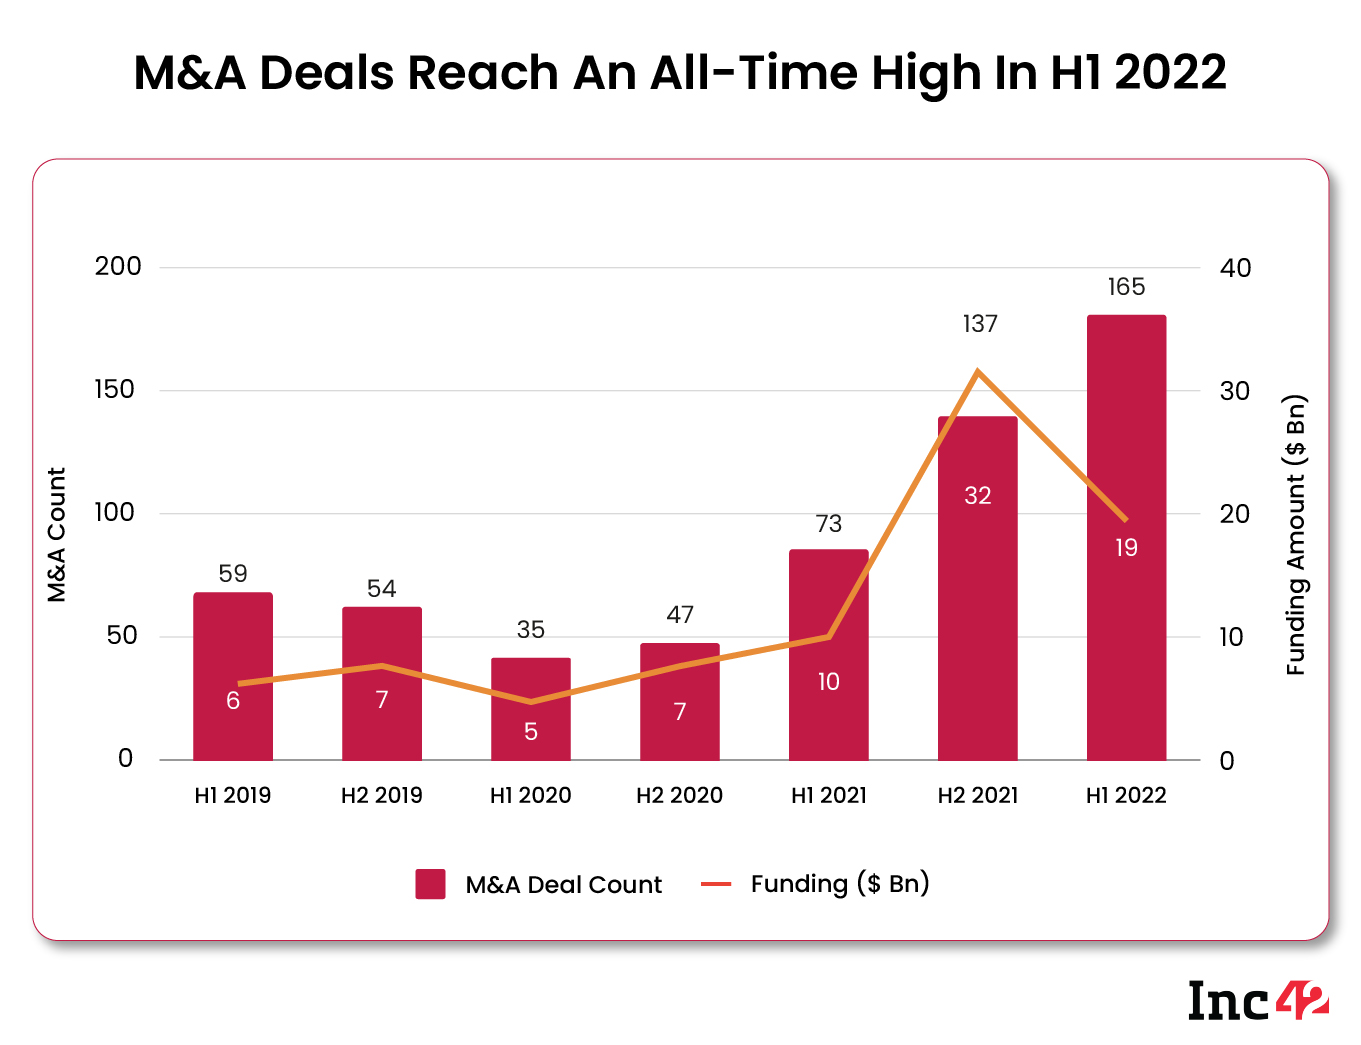 M&A Deals Reach An All-Time High in H1 2022